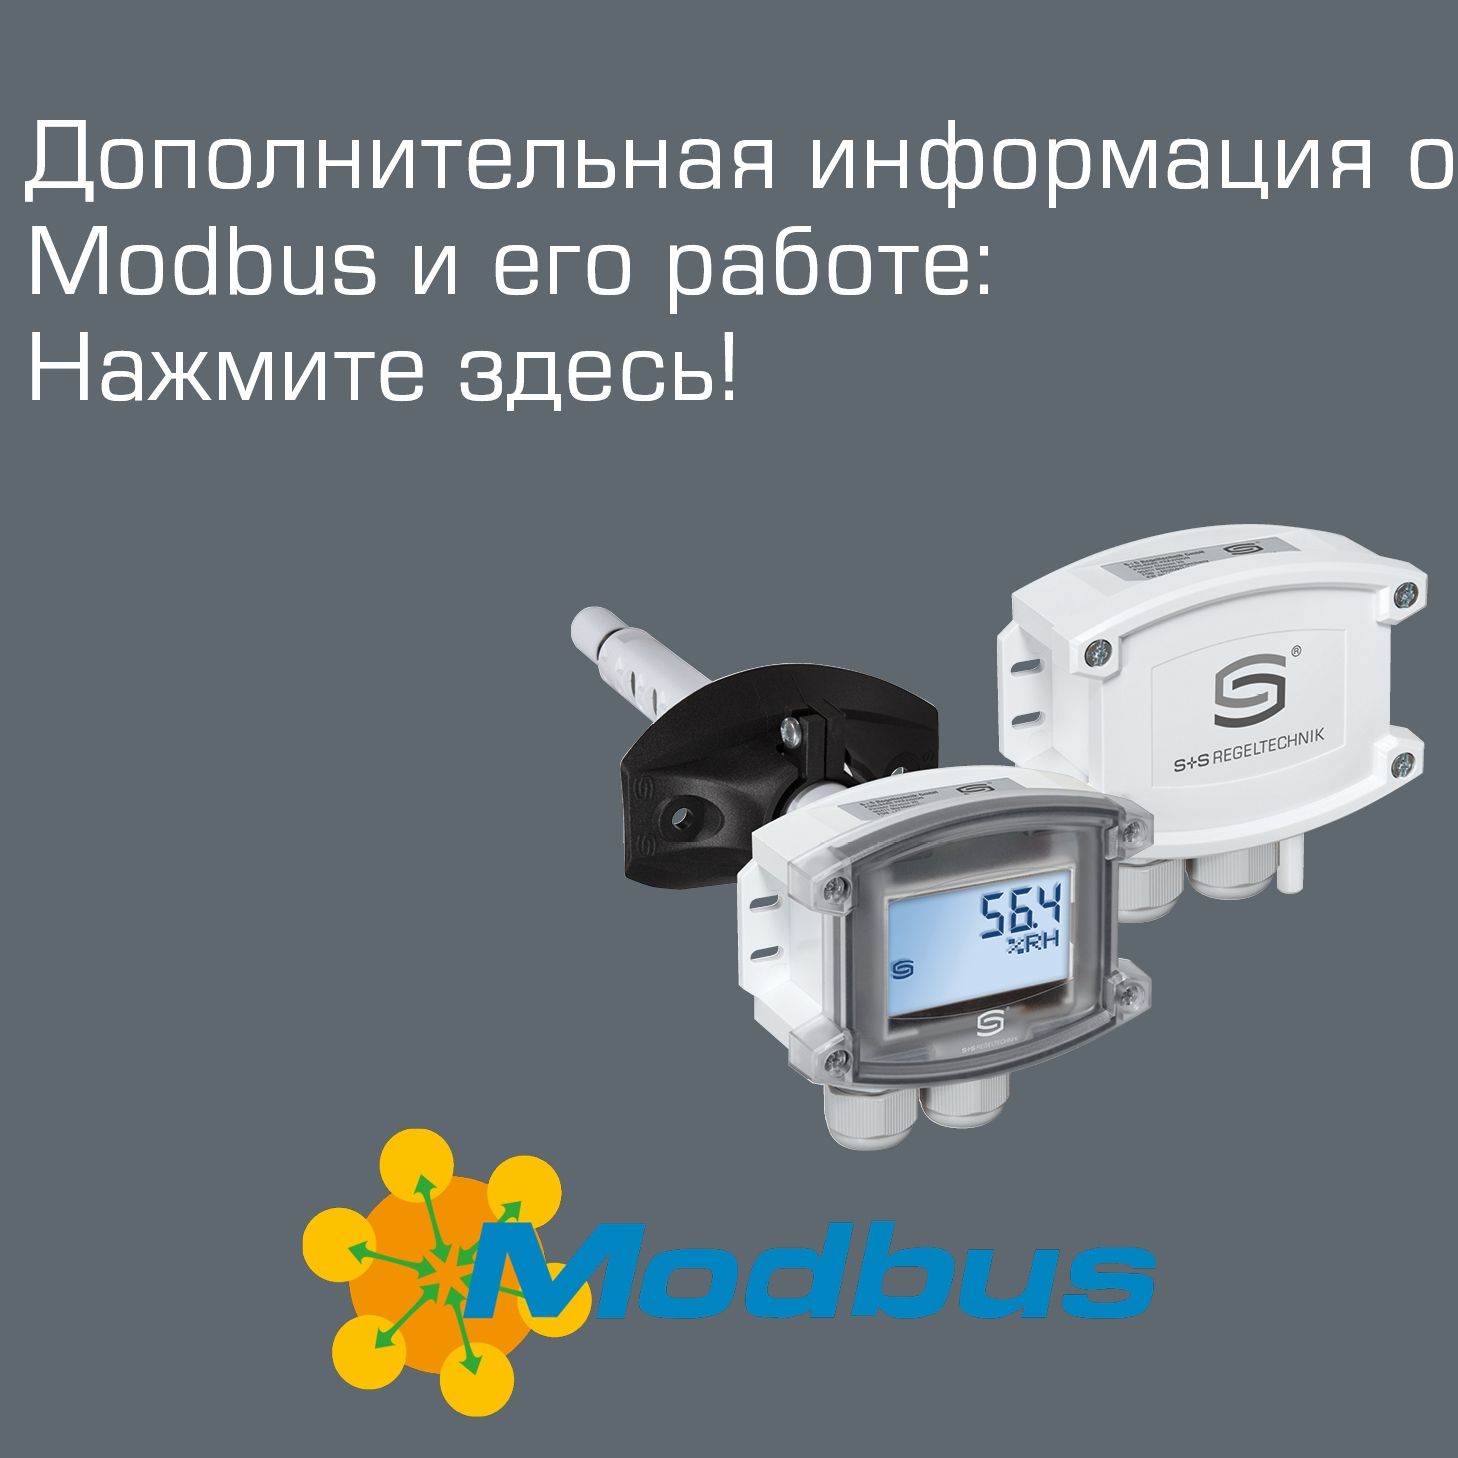 Баннерный заголовок Дополнительная информация о Modbus. Логотип Modbus с правой стороны и два датчика S+S с Modbus в центре изображения